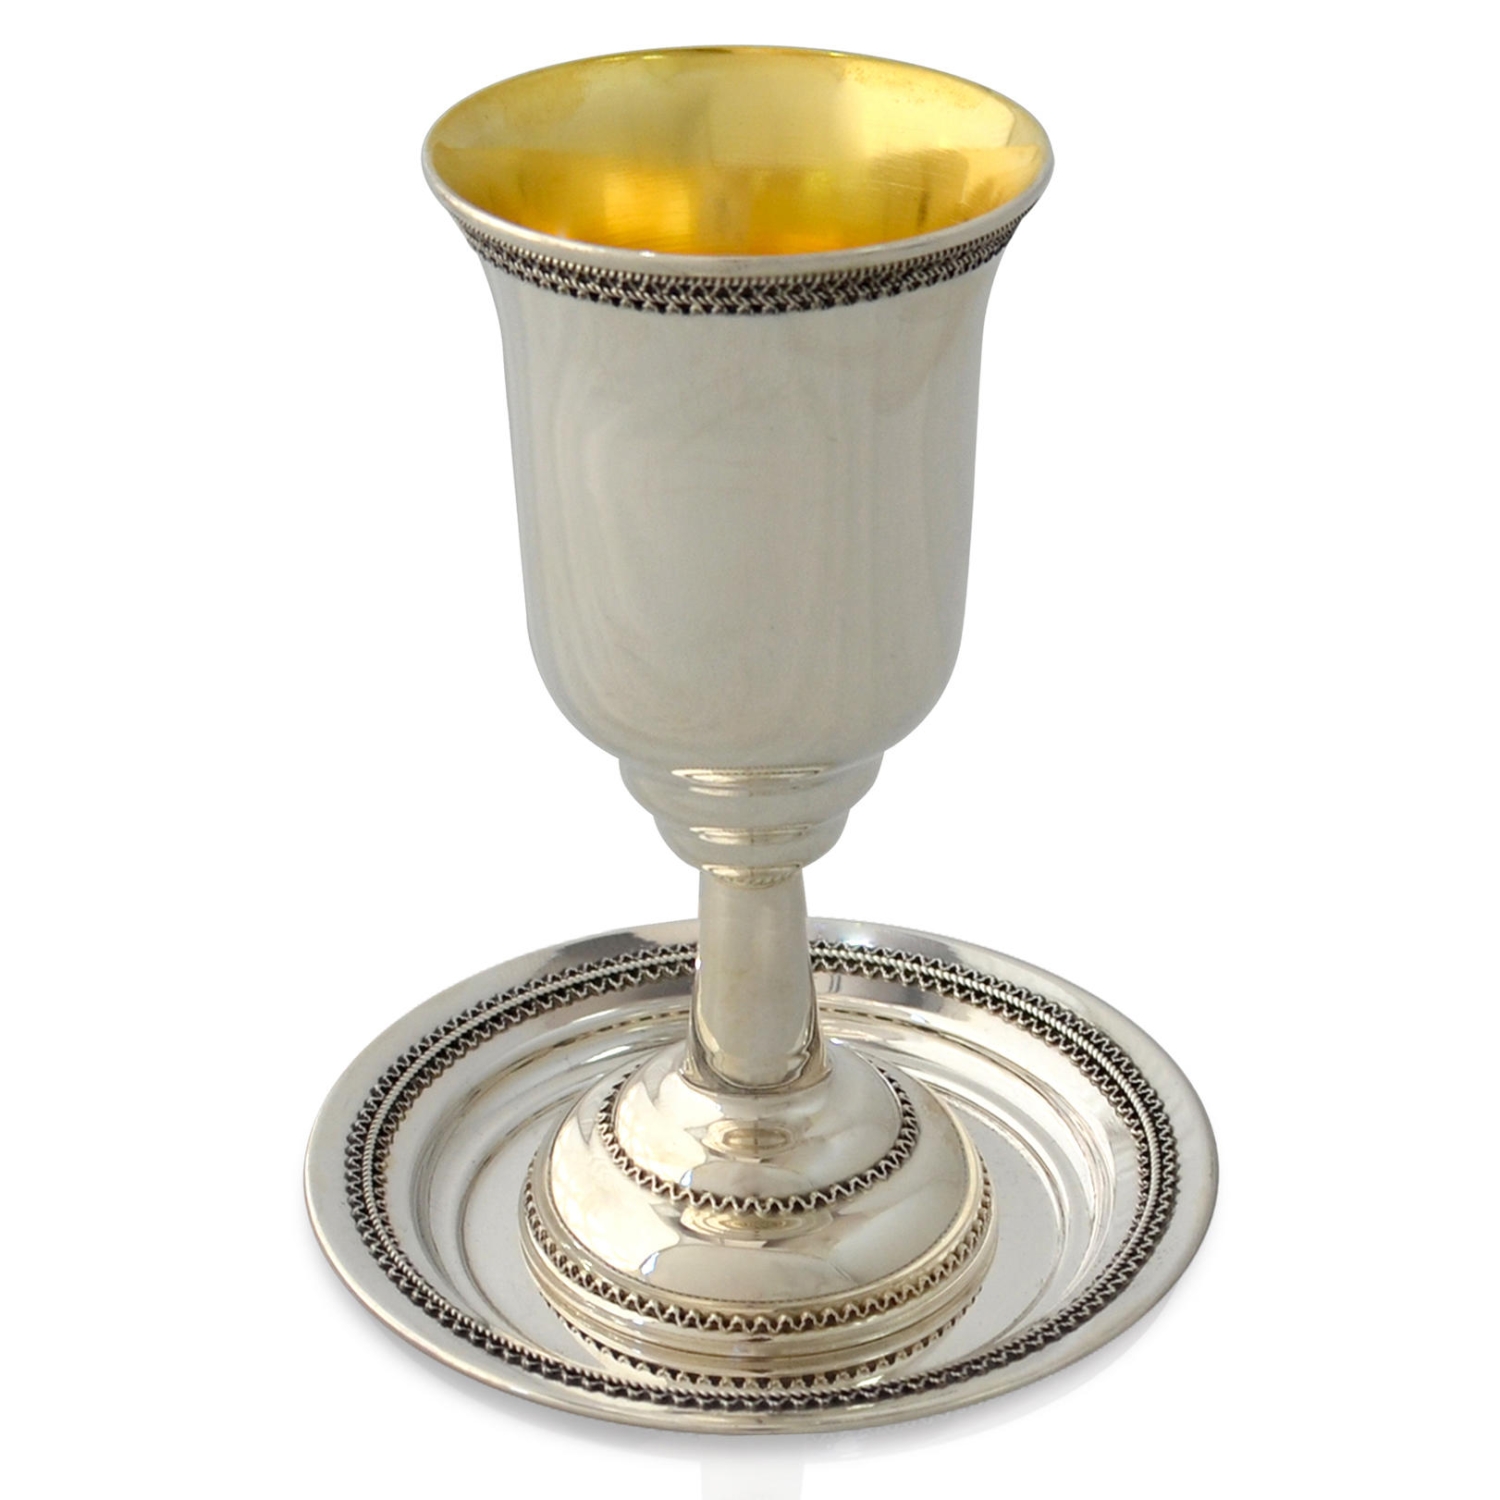 Nadav Art Silver Noam Kiddush Cup with Saucer - 1